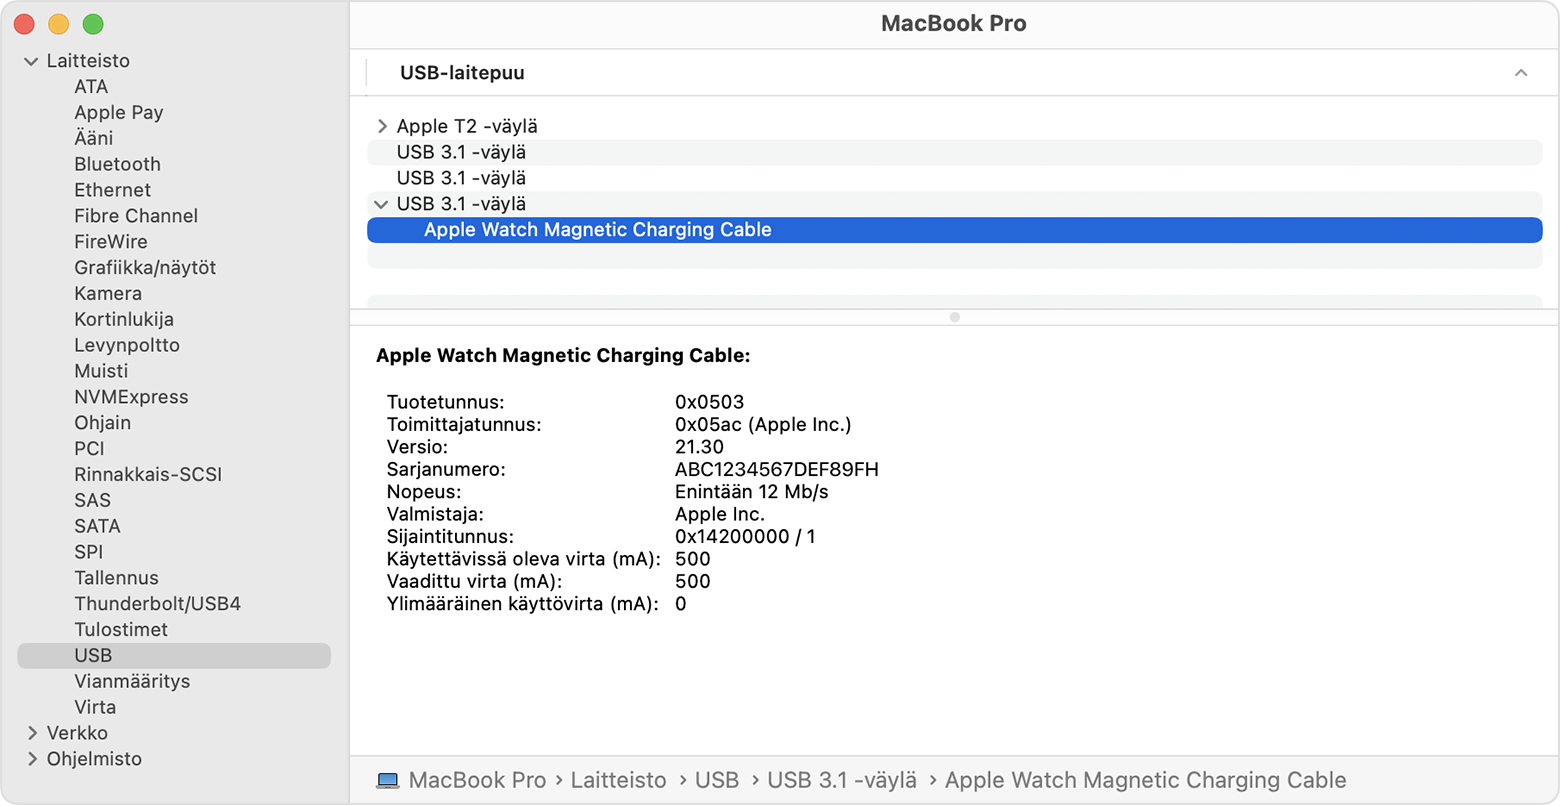 MacBook Pron Järjestelmäraportissa näkyy Apple Watchin magneettisen latauskaapelin valmistajan tiedot